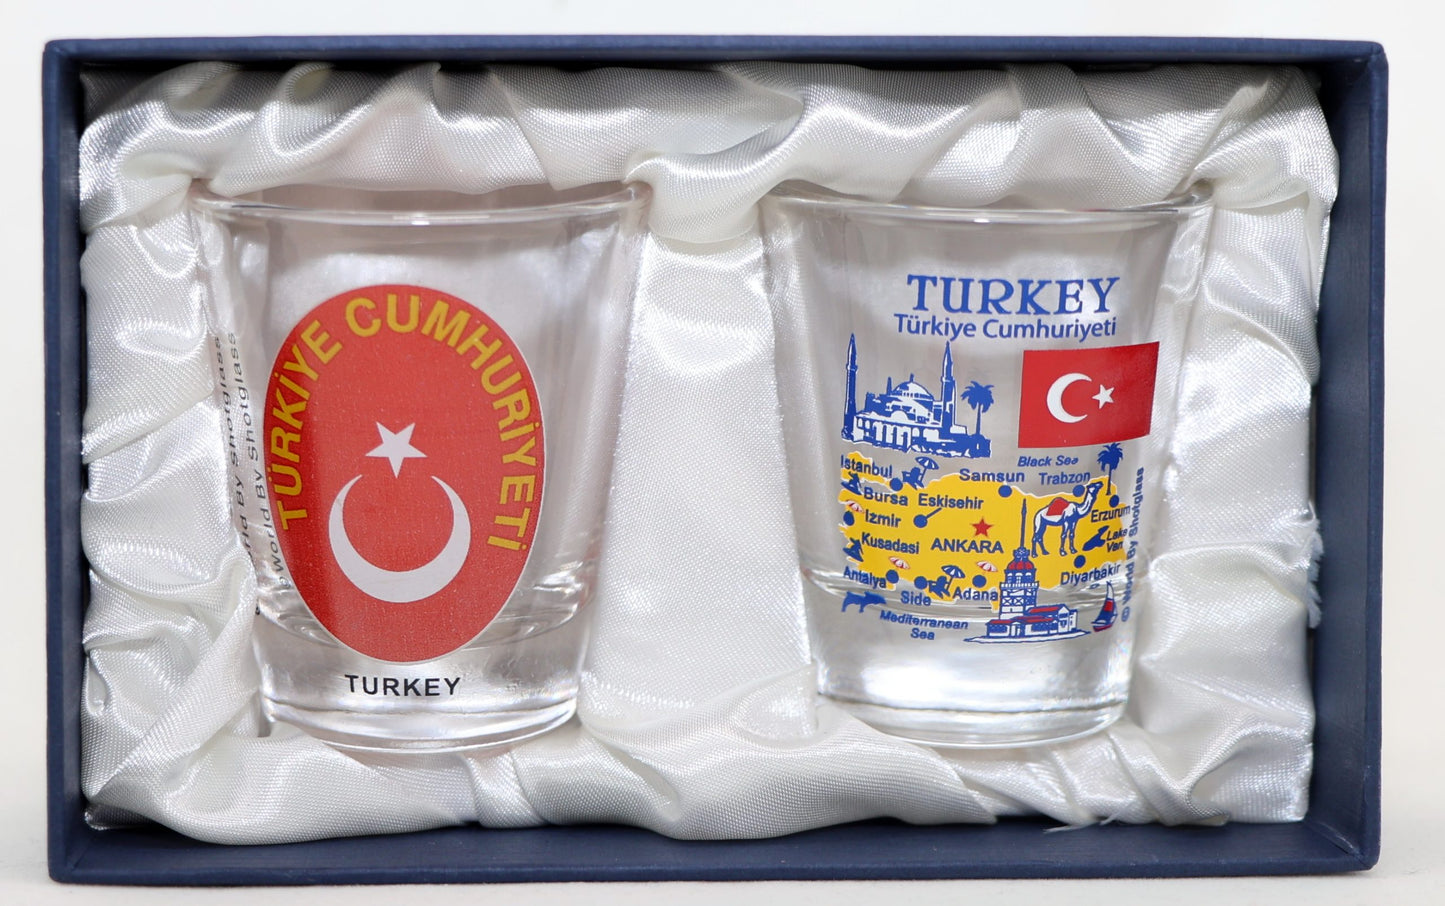 Turkey Souvenir Boxed Shot Glass Set (Set of 2)